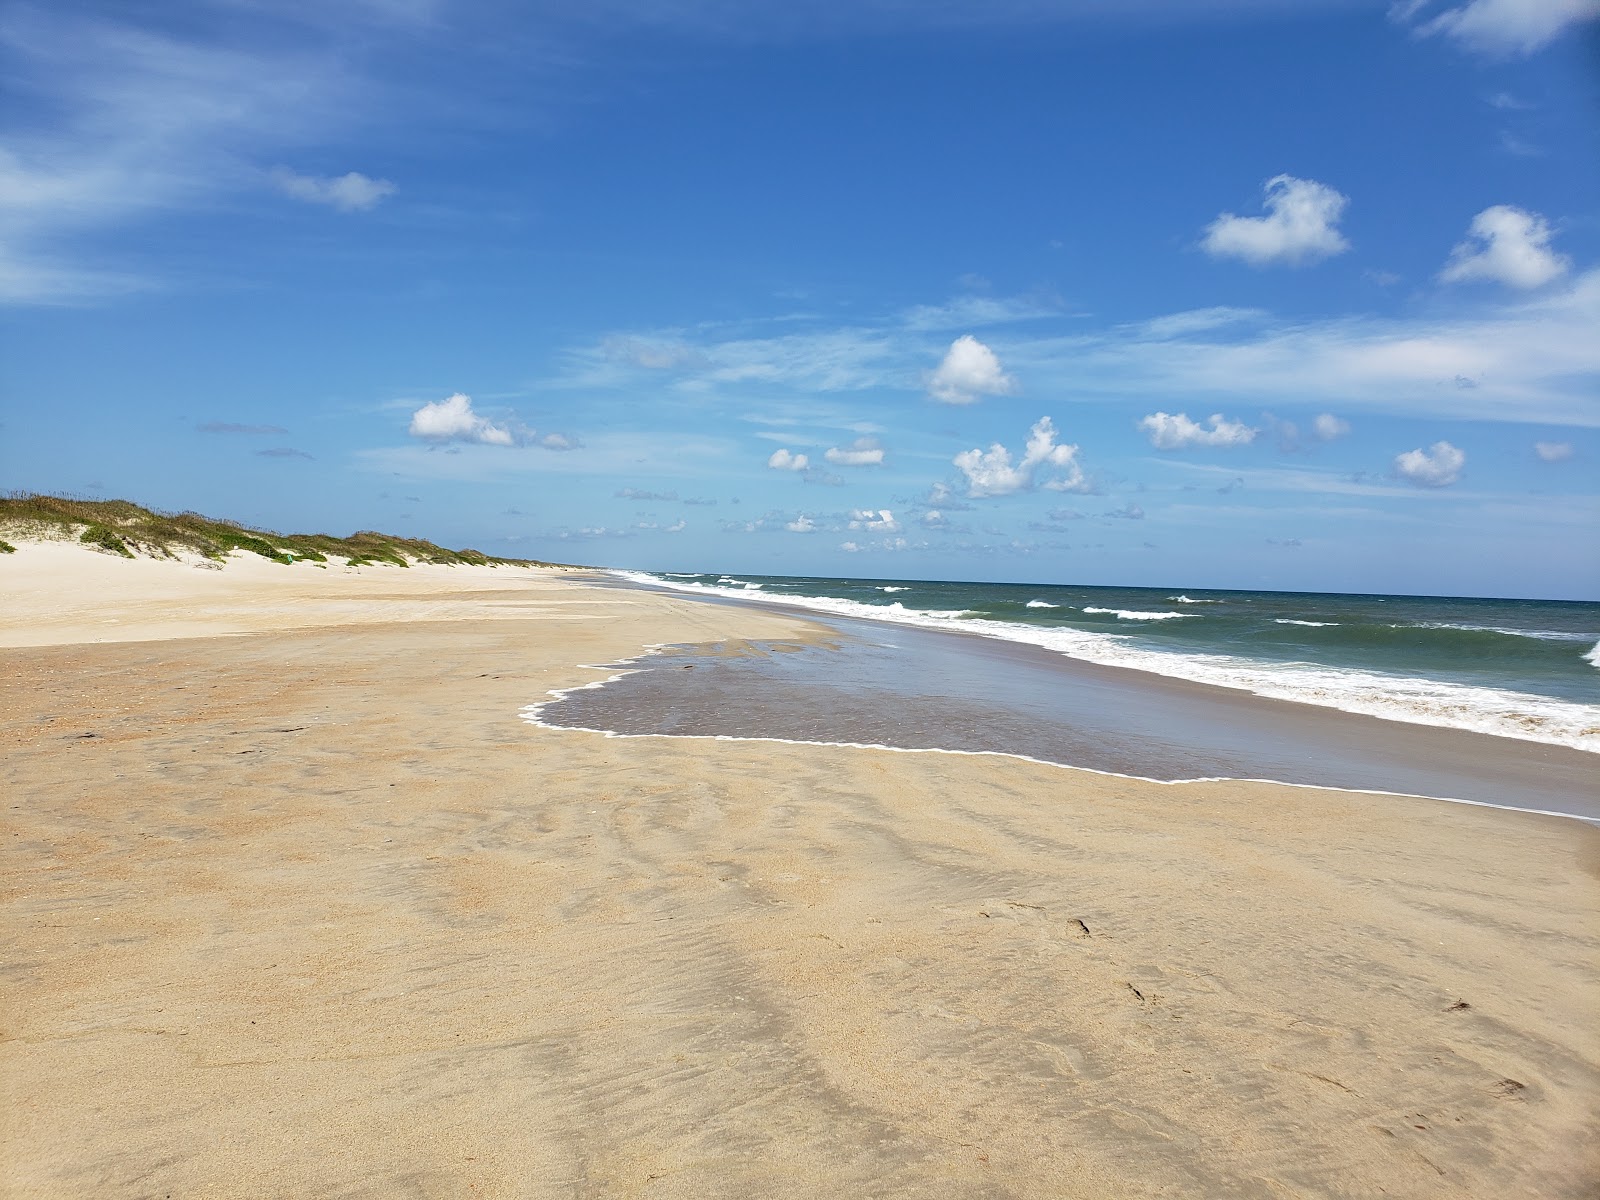 Zdjęcie Ocracoke beach z powierzchnią jasny piasek